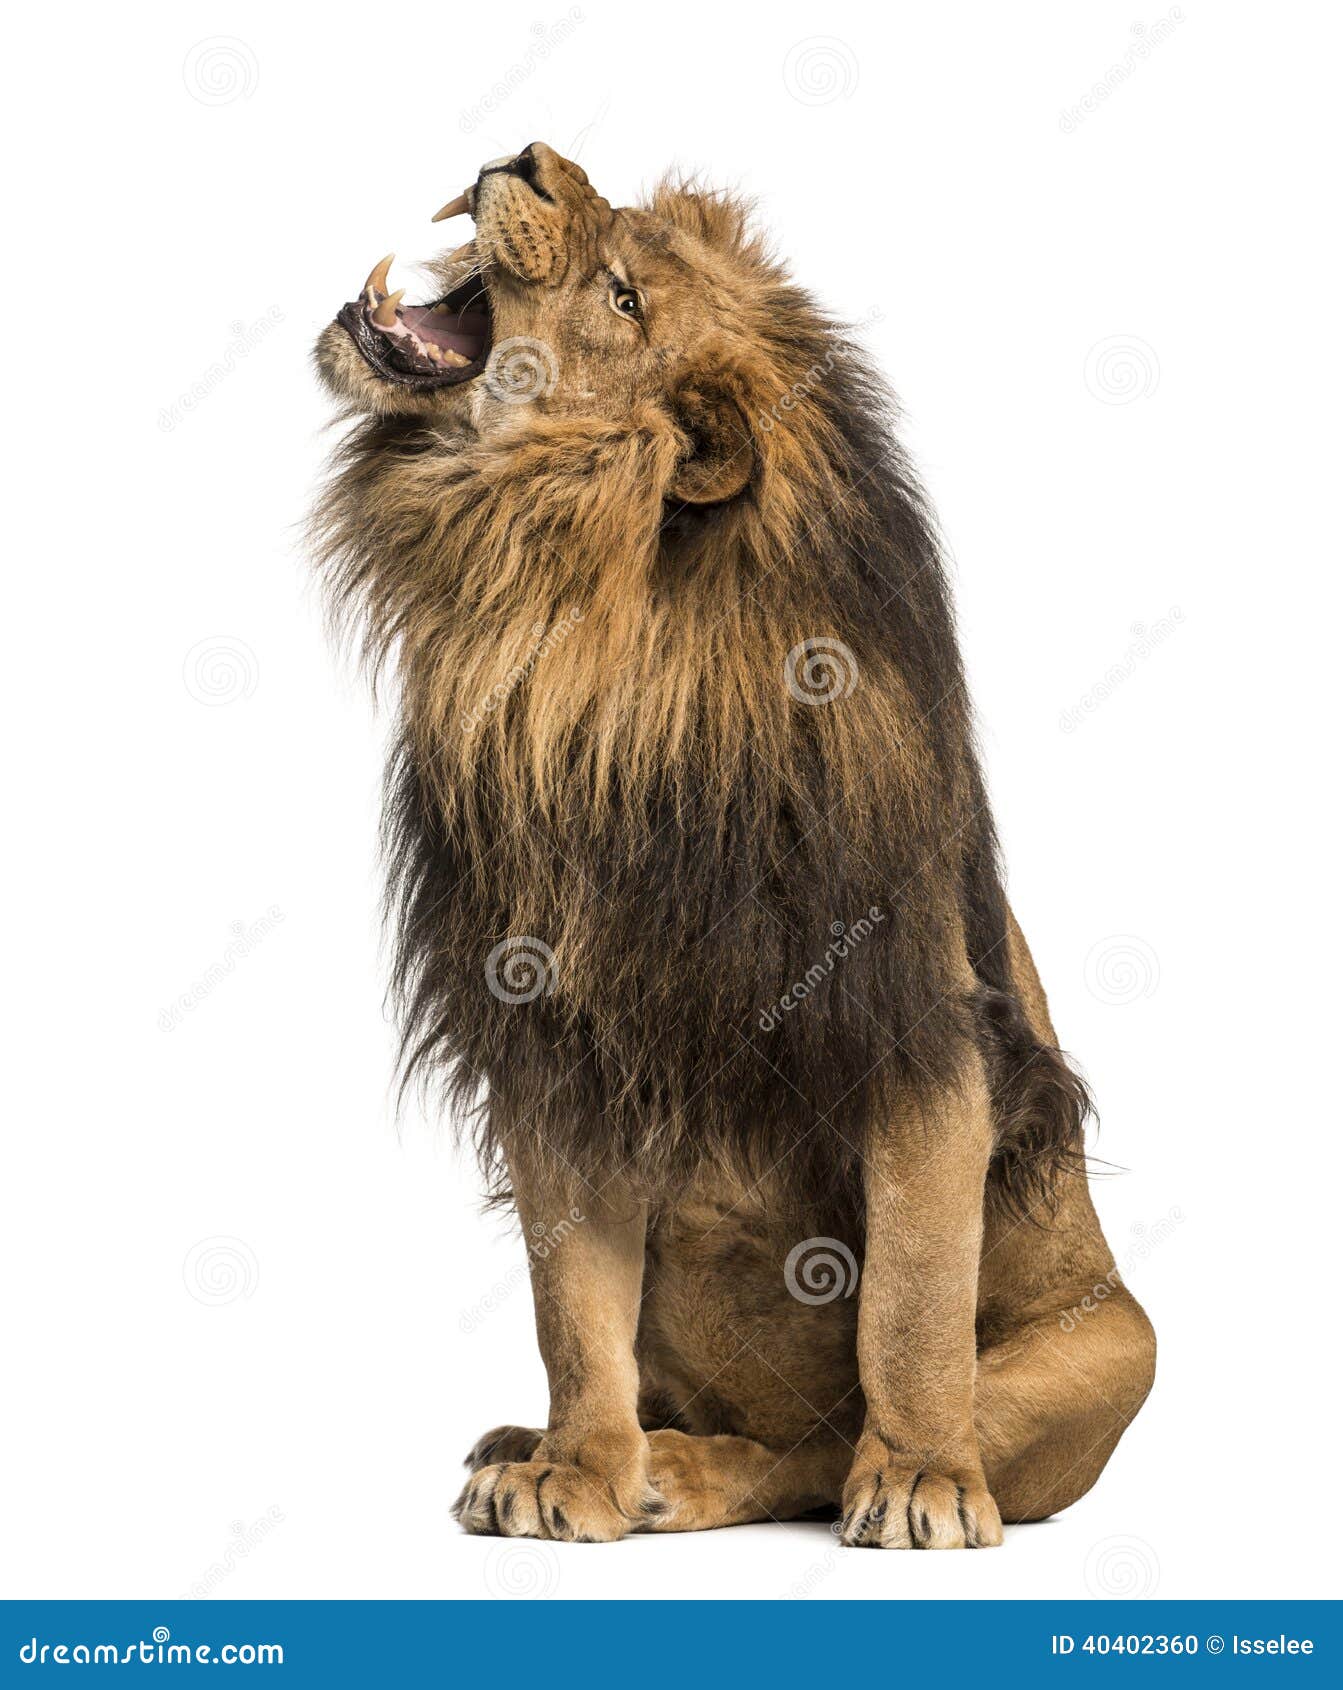 lion roaring, sitting, panthera leo, 10 years old